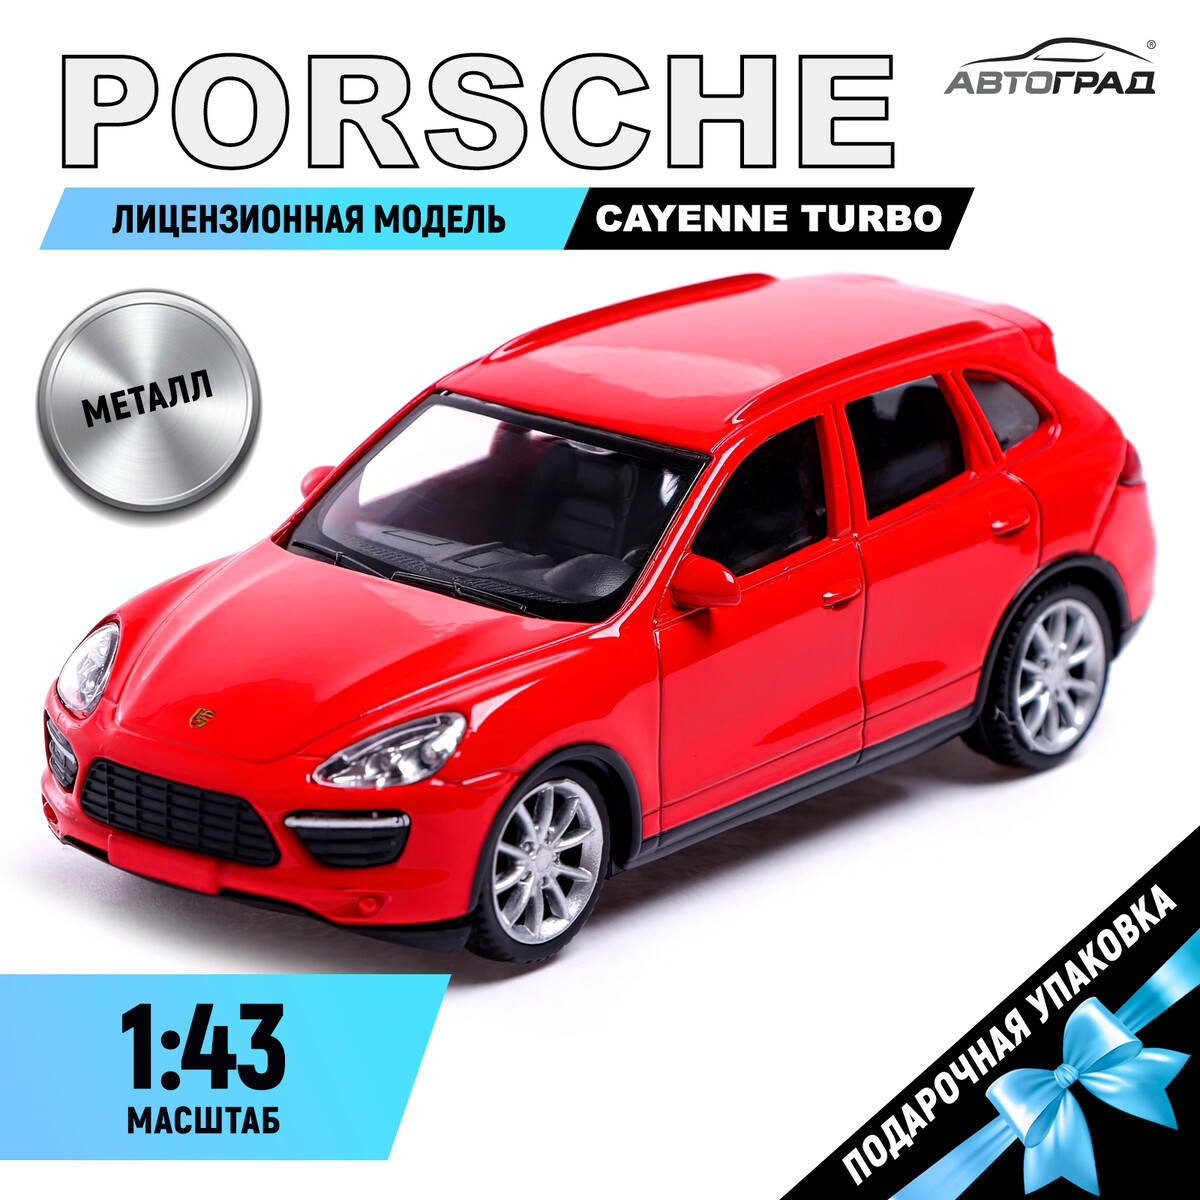 Машина металлическая porsche cayenne turbo, 1:43, цвет красный машина металлическая porsche cayenne turbo 1 43 белый